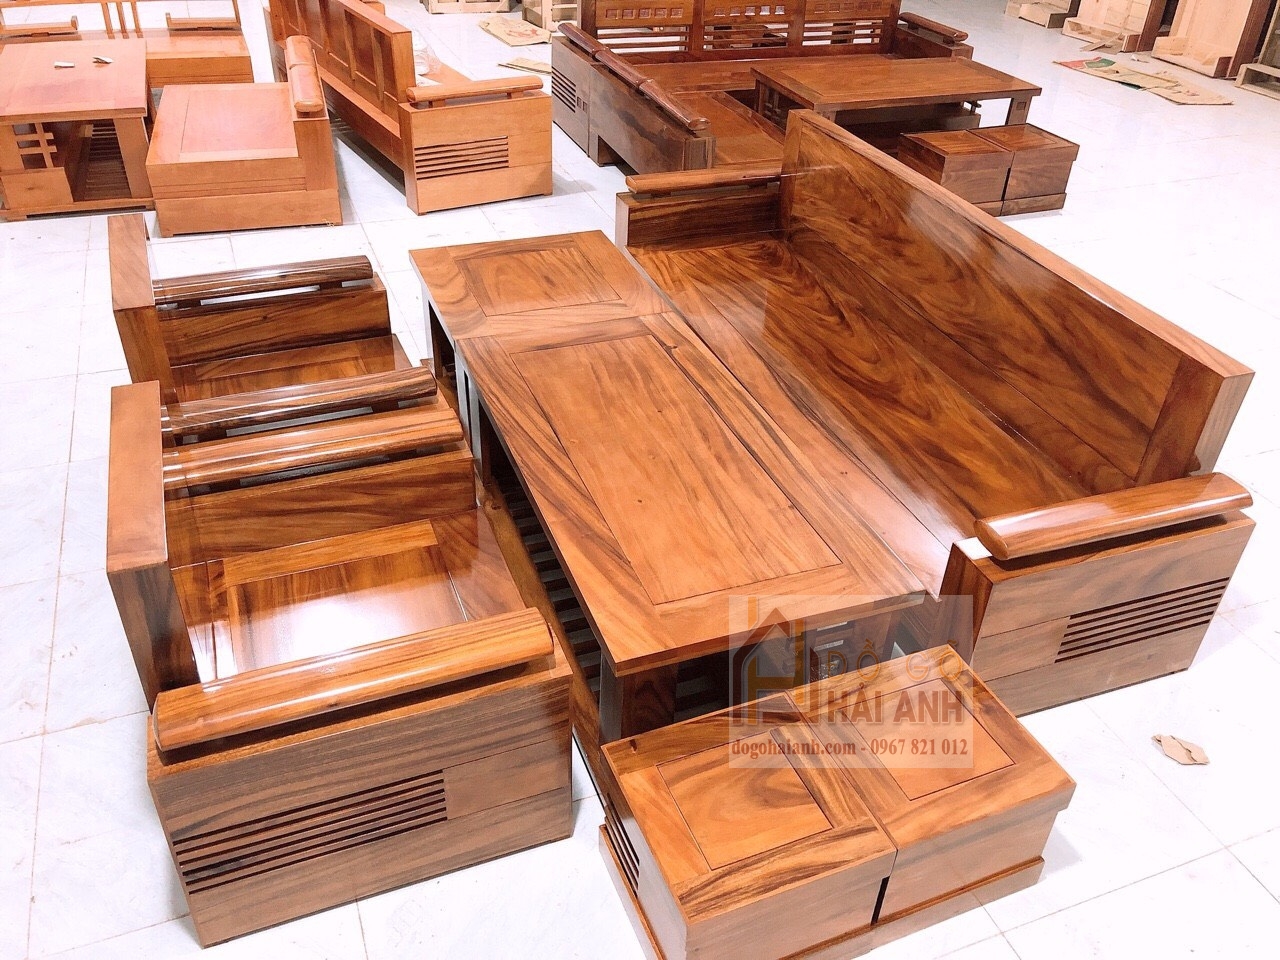 Khám phá hình ảnh bàn ghế gỗ tuyệt đẹp này, với chất liệu gỗ cao cấp và thiết kế đơn giản nhưng sang trọng, đảm bảo sẽ làm bạn vô cùng hài lòng. Hãy để cho không gian sống của bạn được trang trí thật ấn tượng và độc đáo với bàn ghế gỗ này.